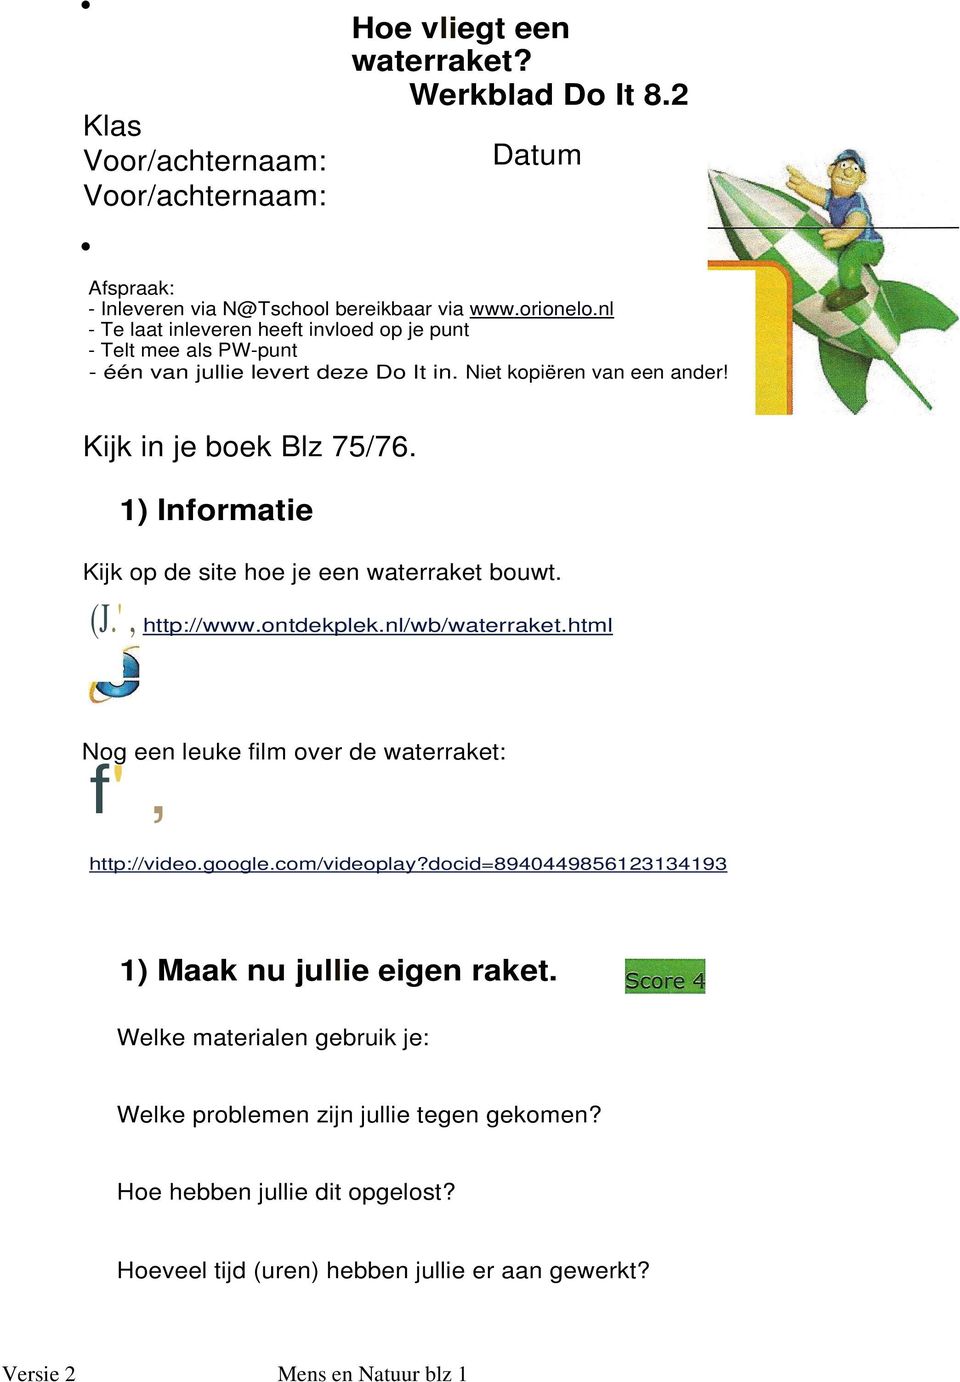 1) Informatie Kijk op de site hoe je een waterraket bouwt. (J.', http://www.ontdekplek.nl/wb/waterraket.html Nog een leuke film over de waterraket: f', http://video.google.